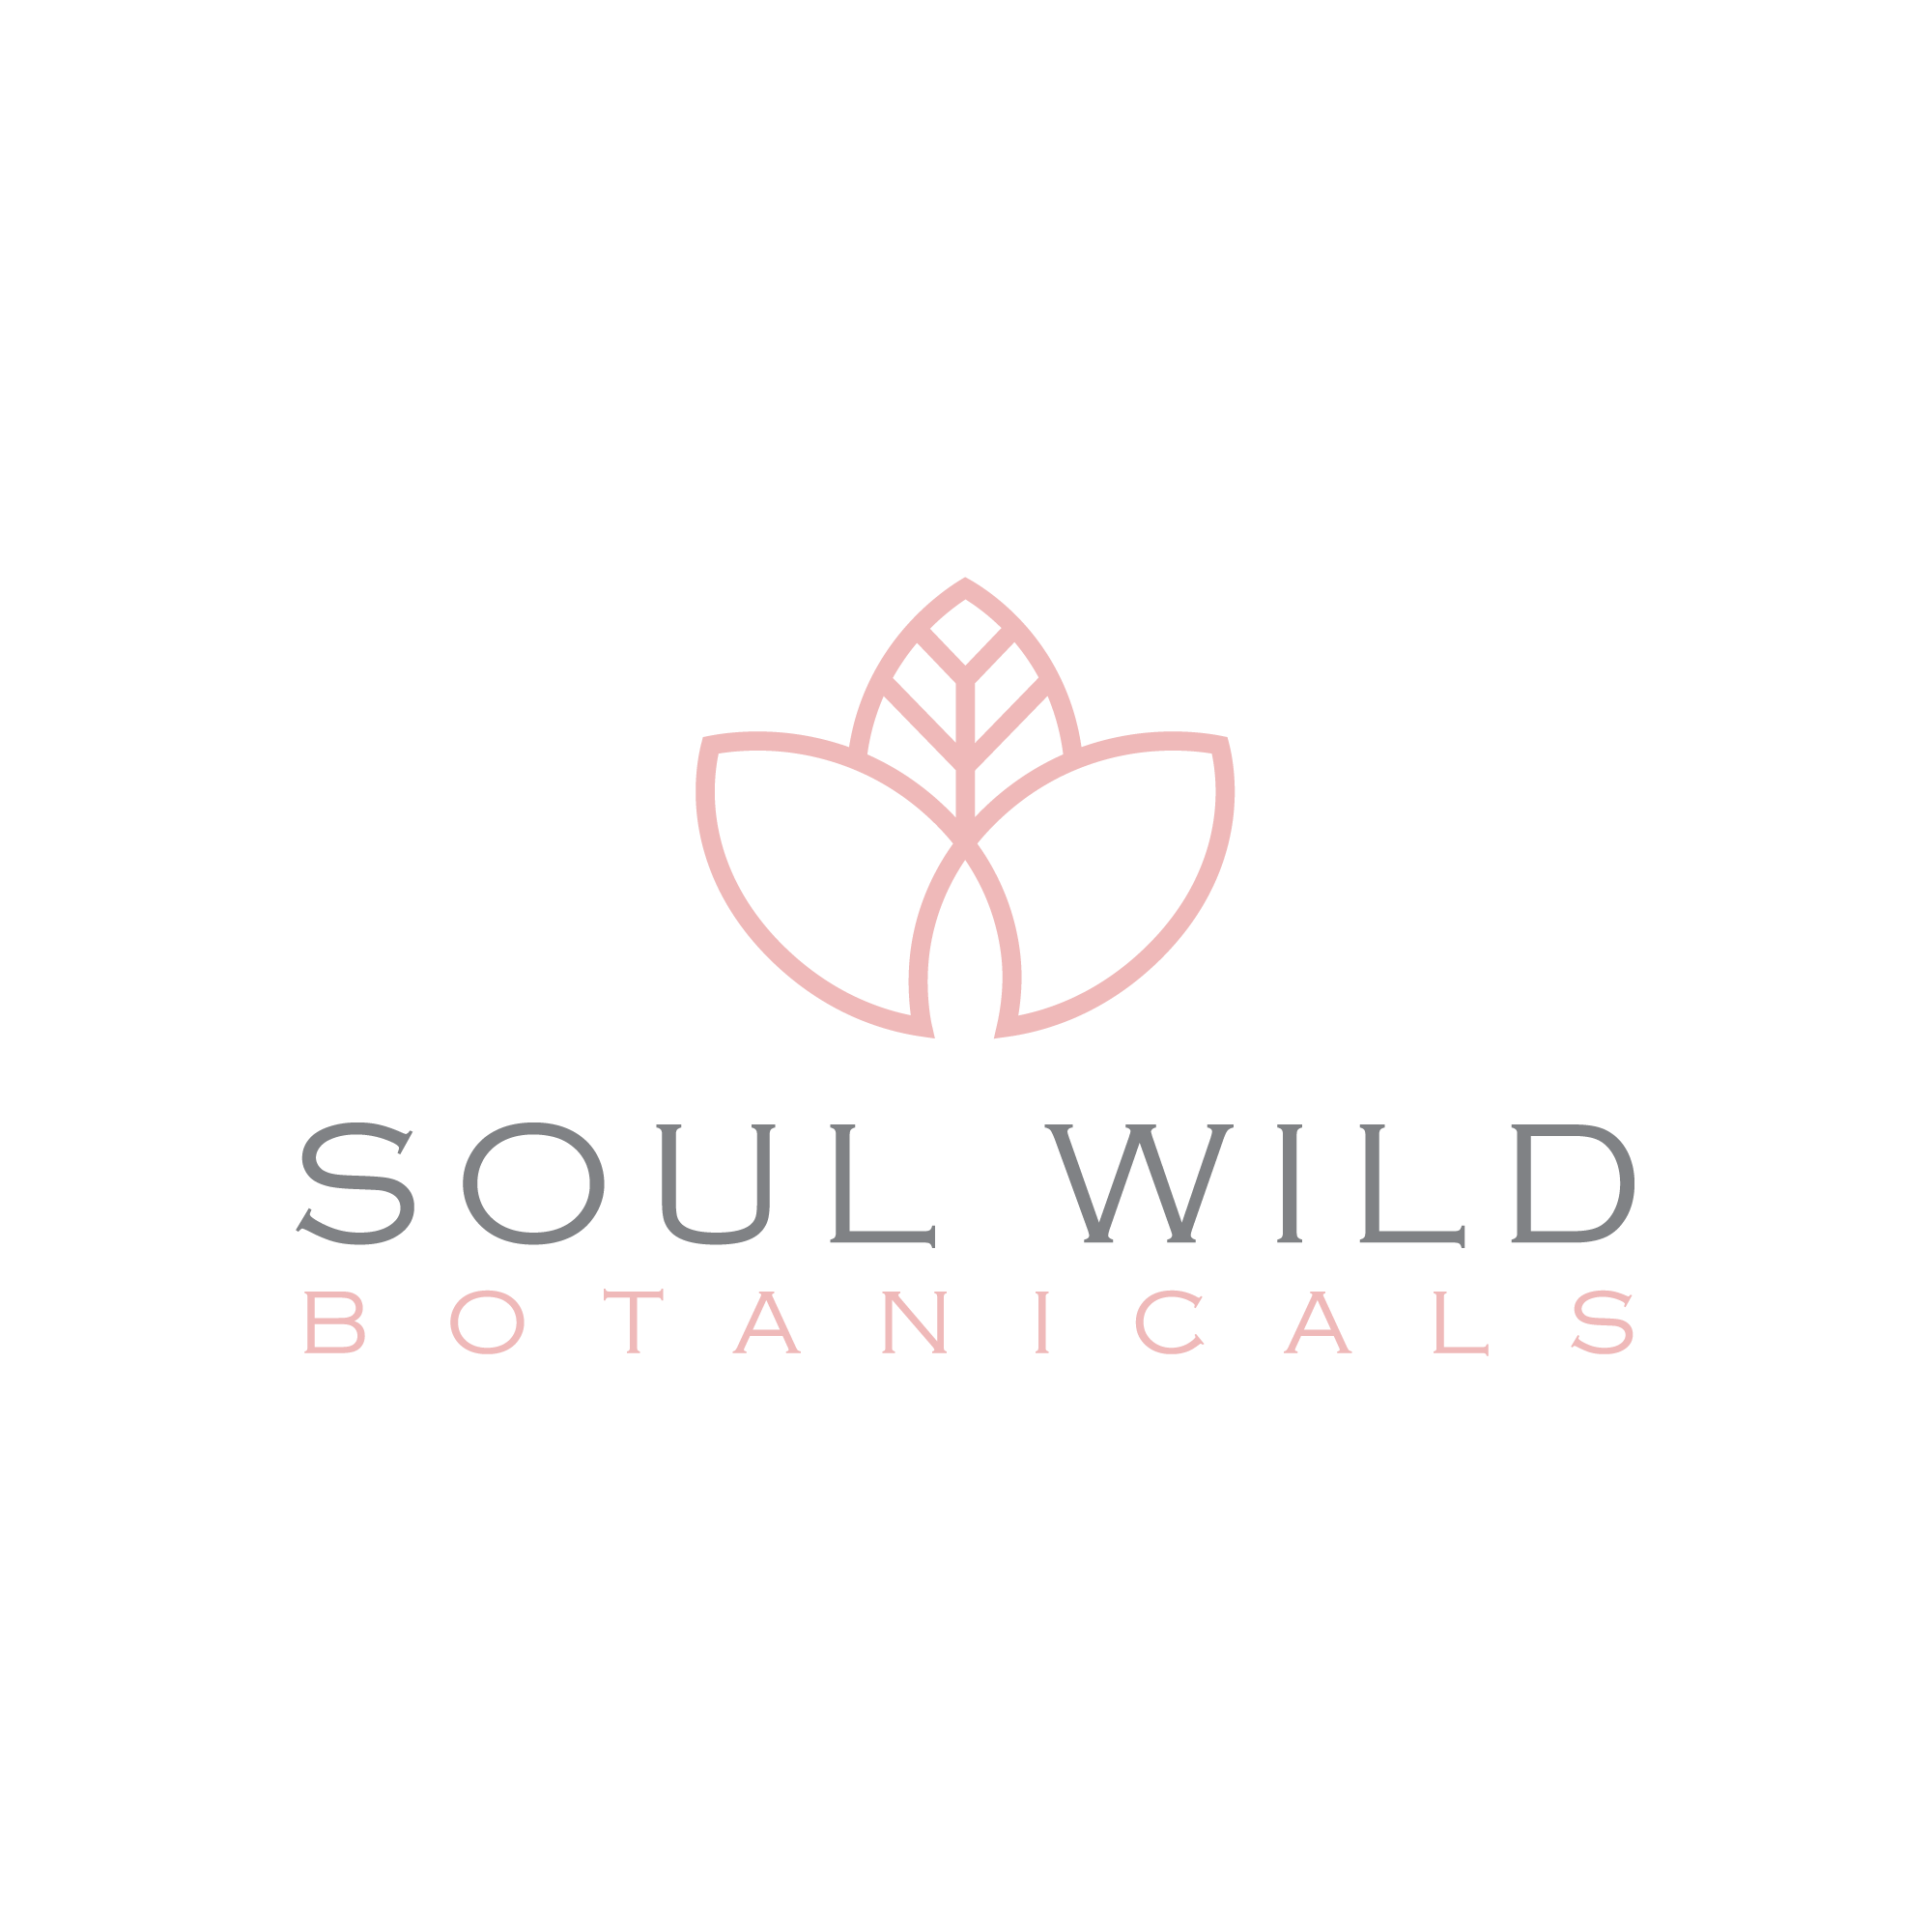 Soul-Wild-Botanicals-logo-B2.png